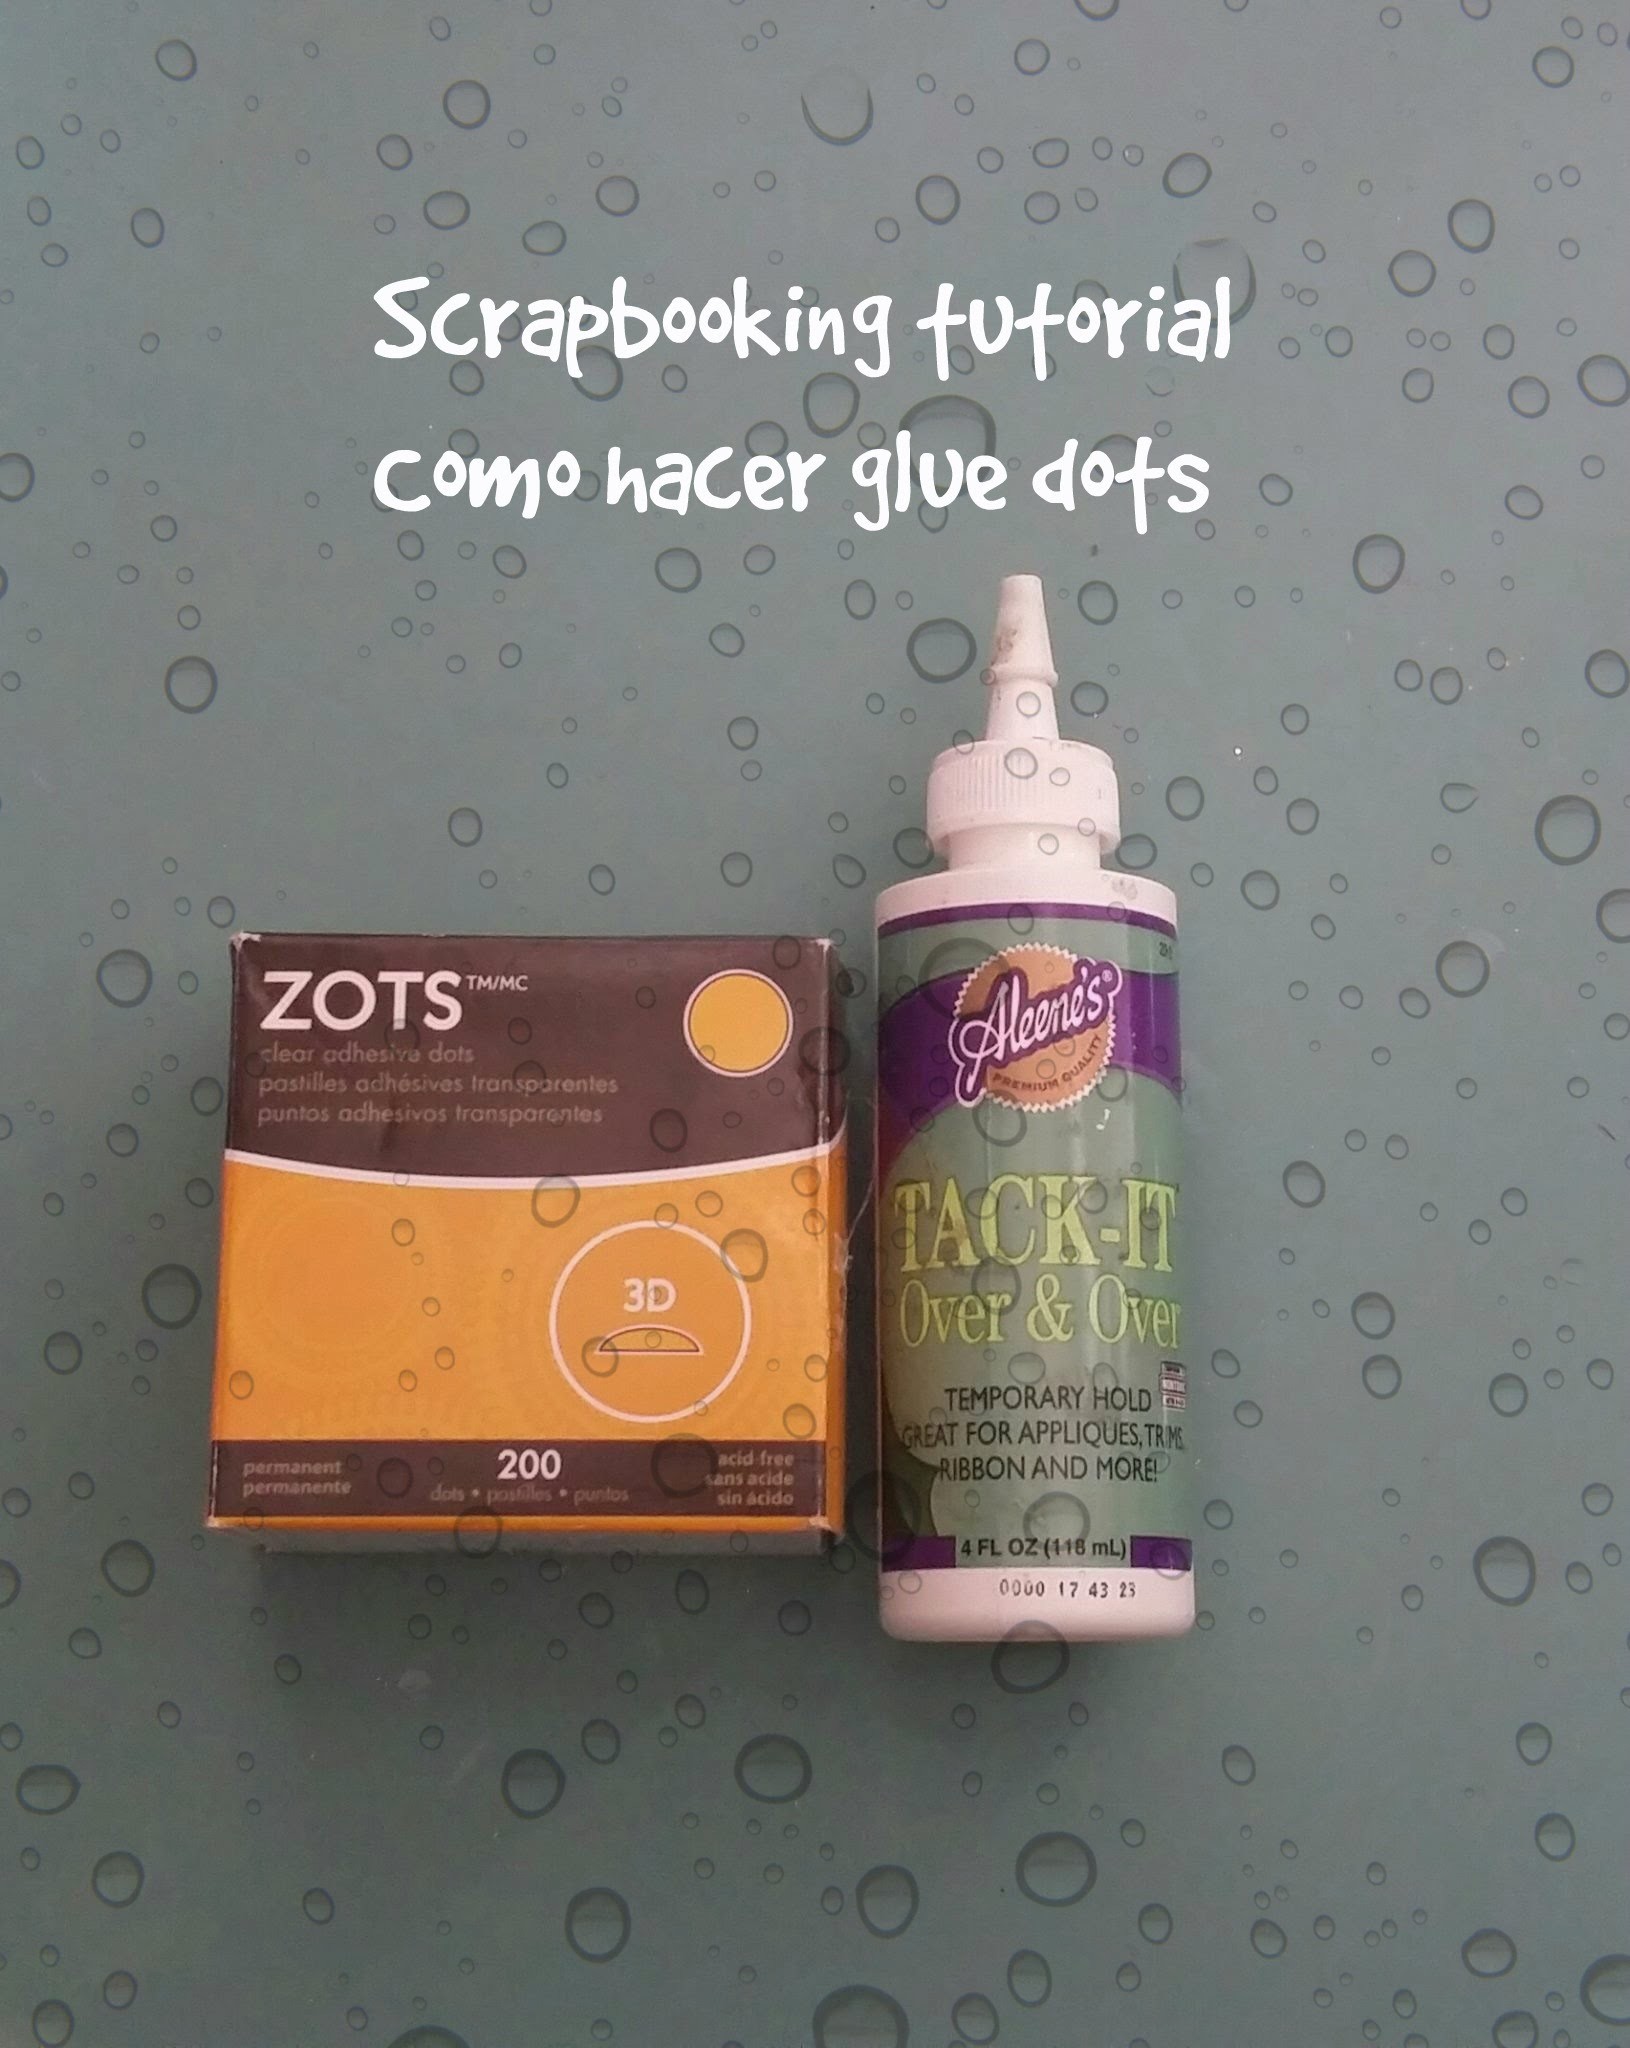 Scrapbooking tutorial - Cómo hacer Glue dots